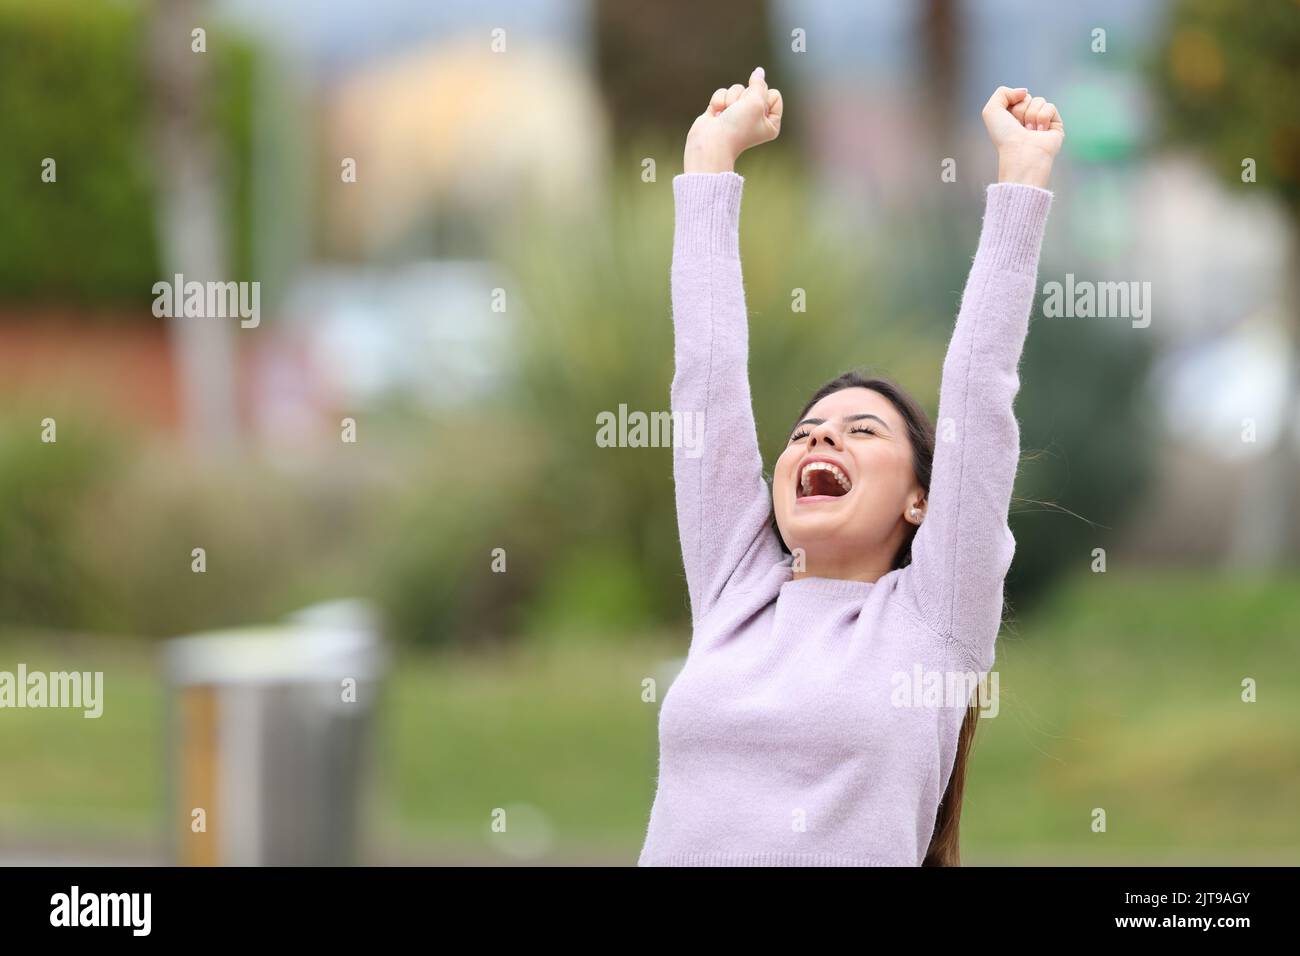 Emocionado adolescente levantando brazos celebrando el éxito en un parque Foto de stock